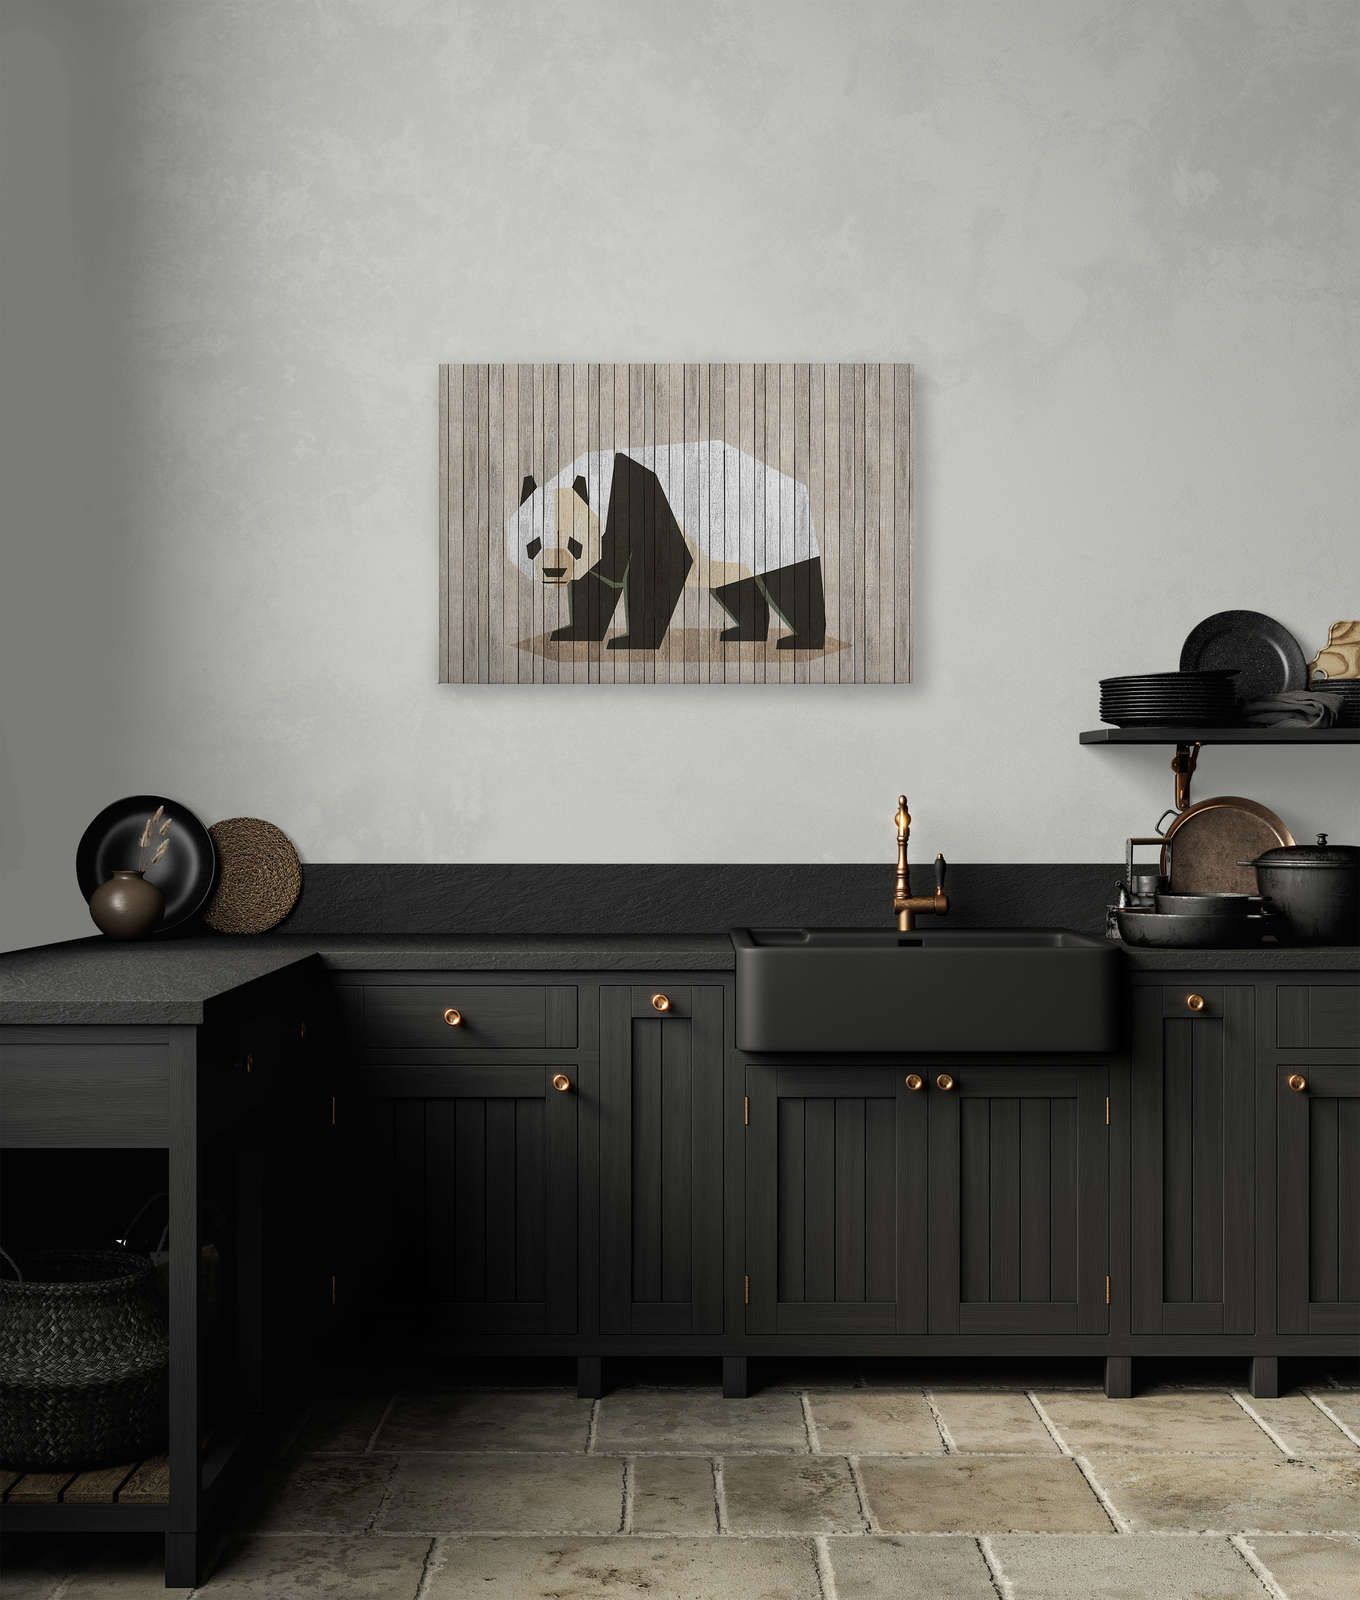             Born to Be Wild 2 - Quadro su pannello di legno con panda e parete di cartone - 0,90 m x 0,60 m
        